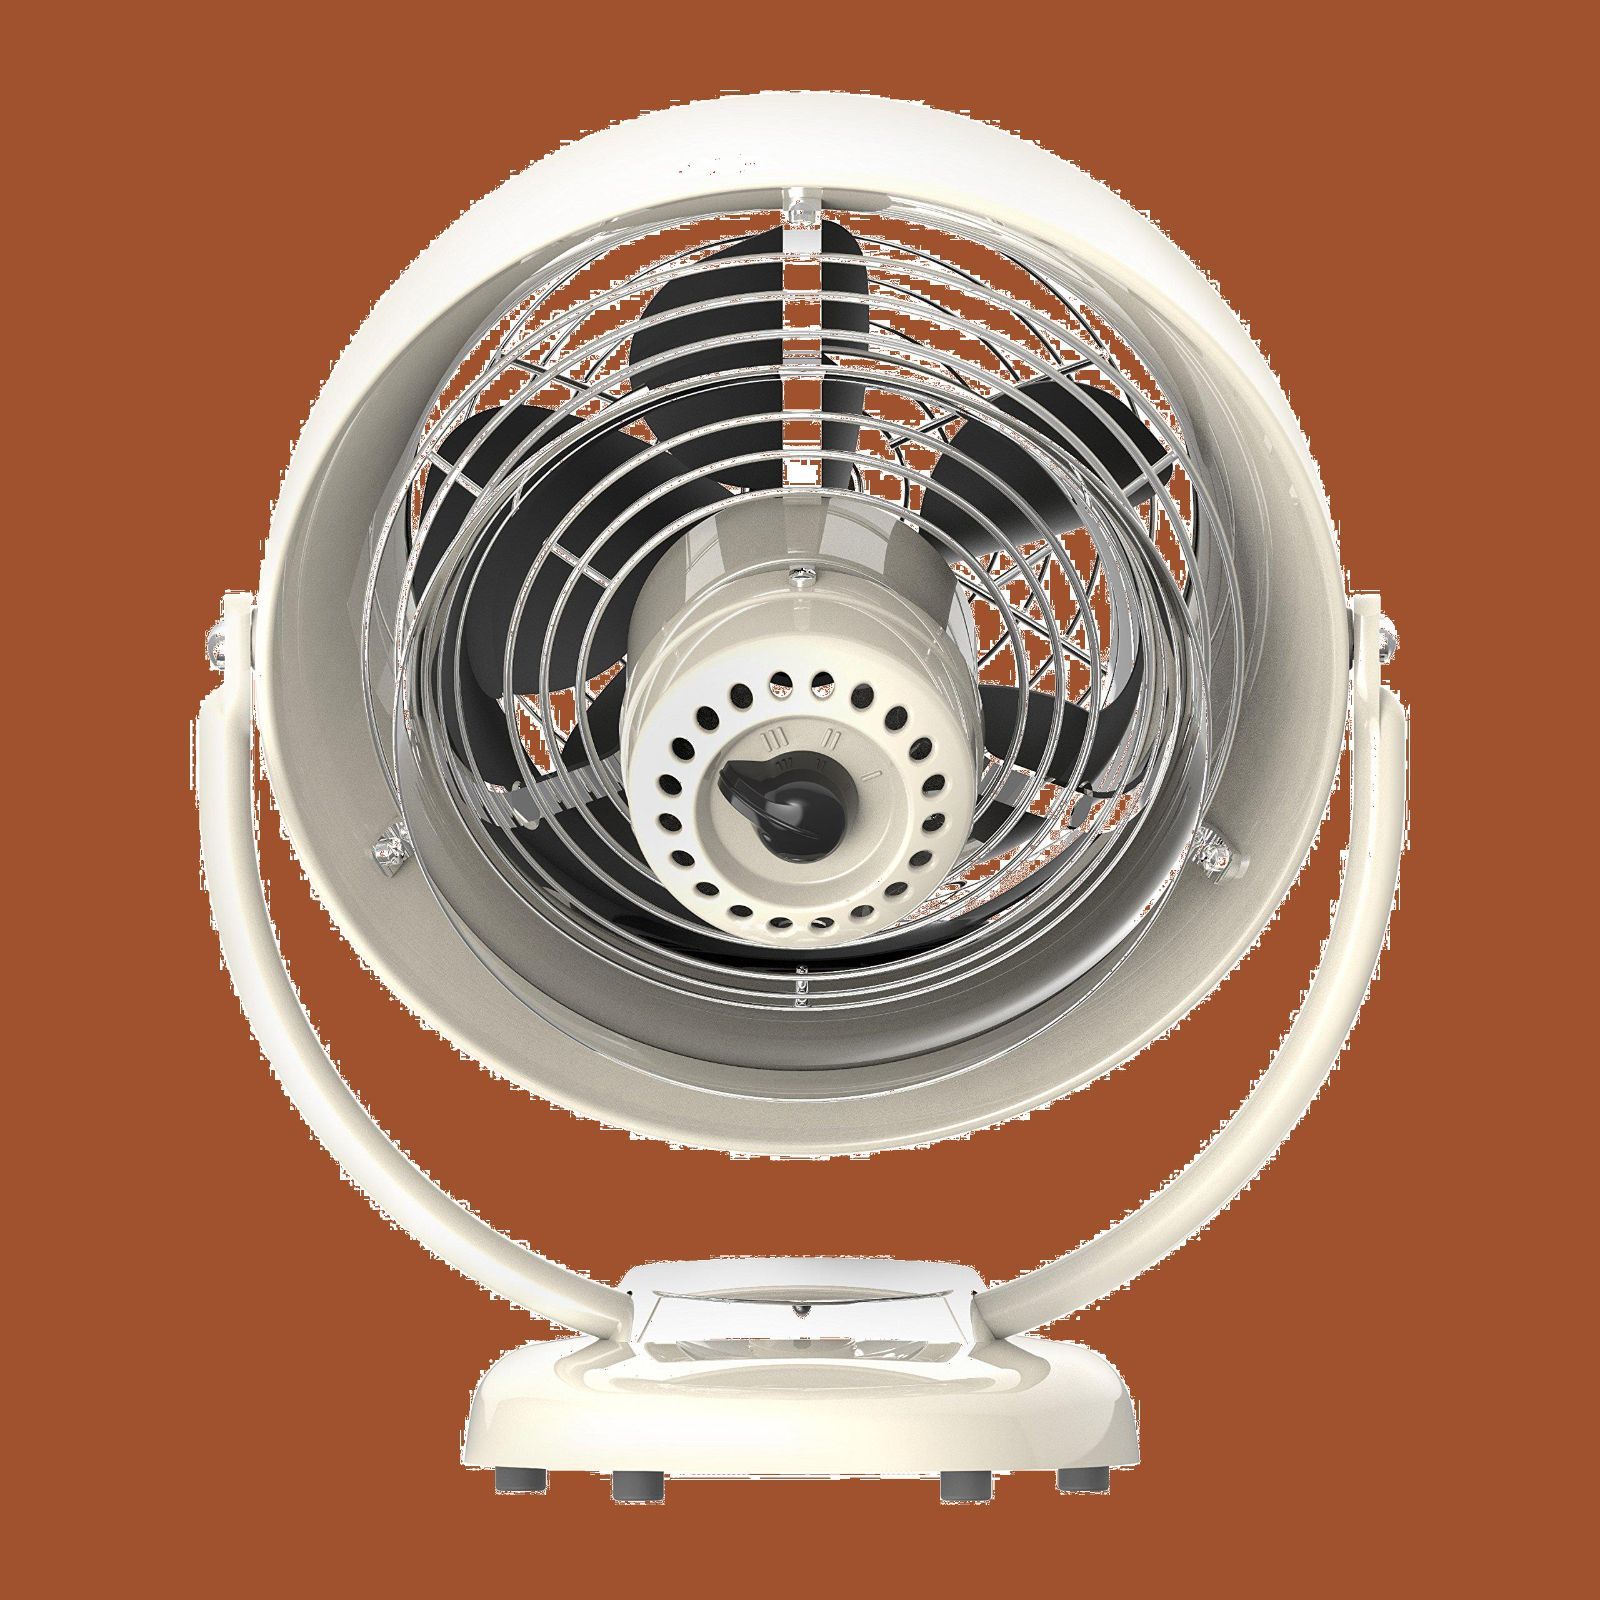 ボルネード サーキュレーター 24畳 空気循環 植物向き 部屋干し 節電 換気 クラシック レトロ vintage white VFAN2-JP